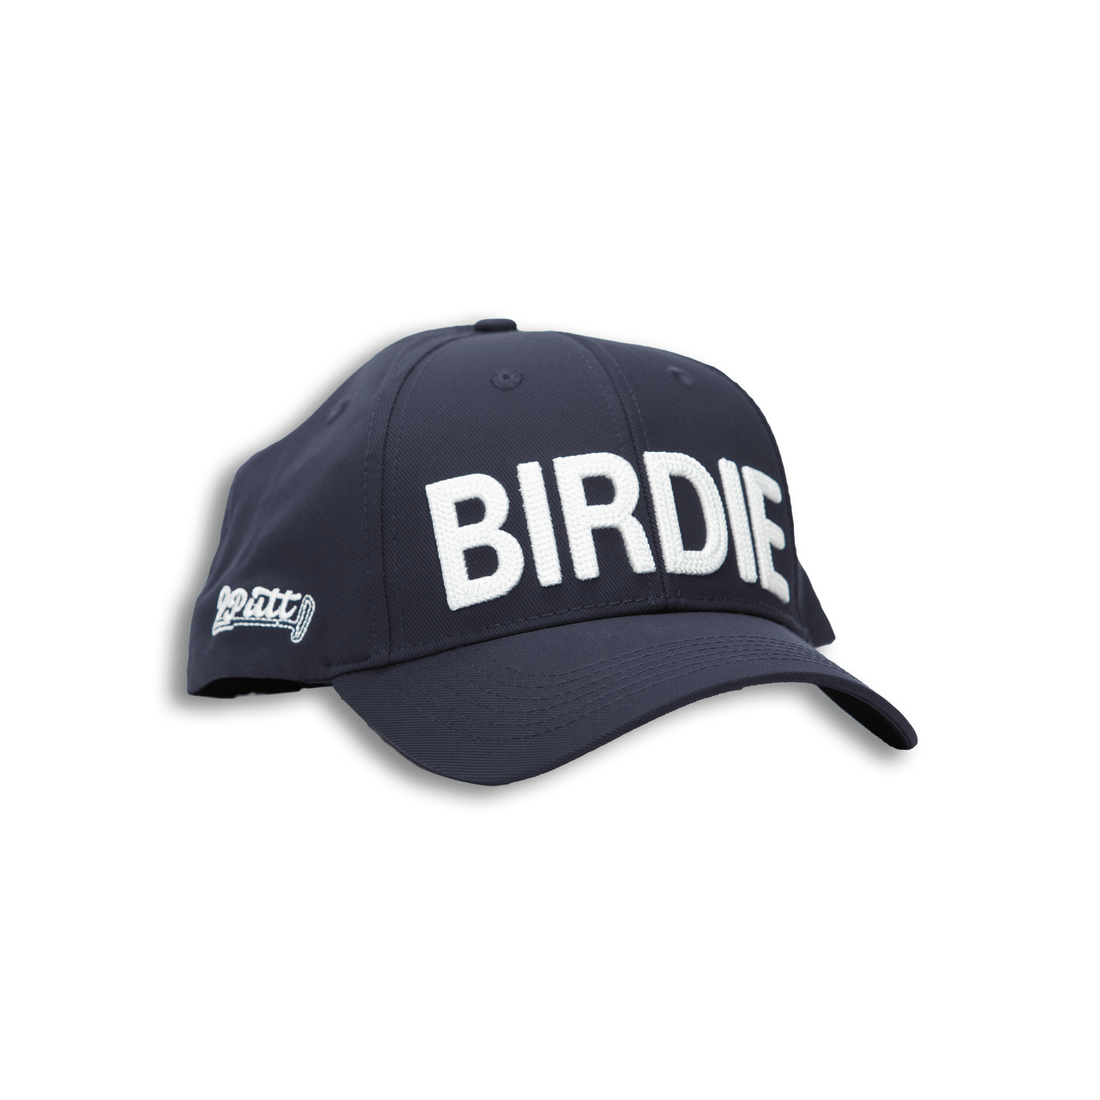 BIRDIE Hat - 2putt